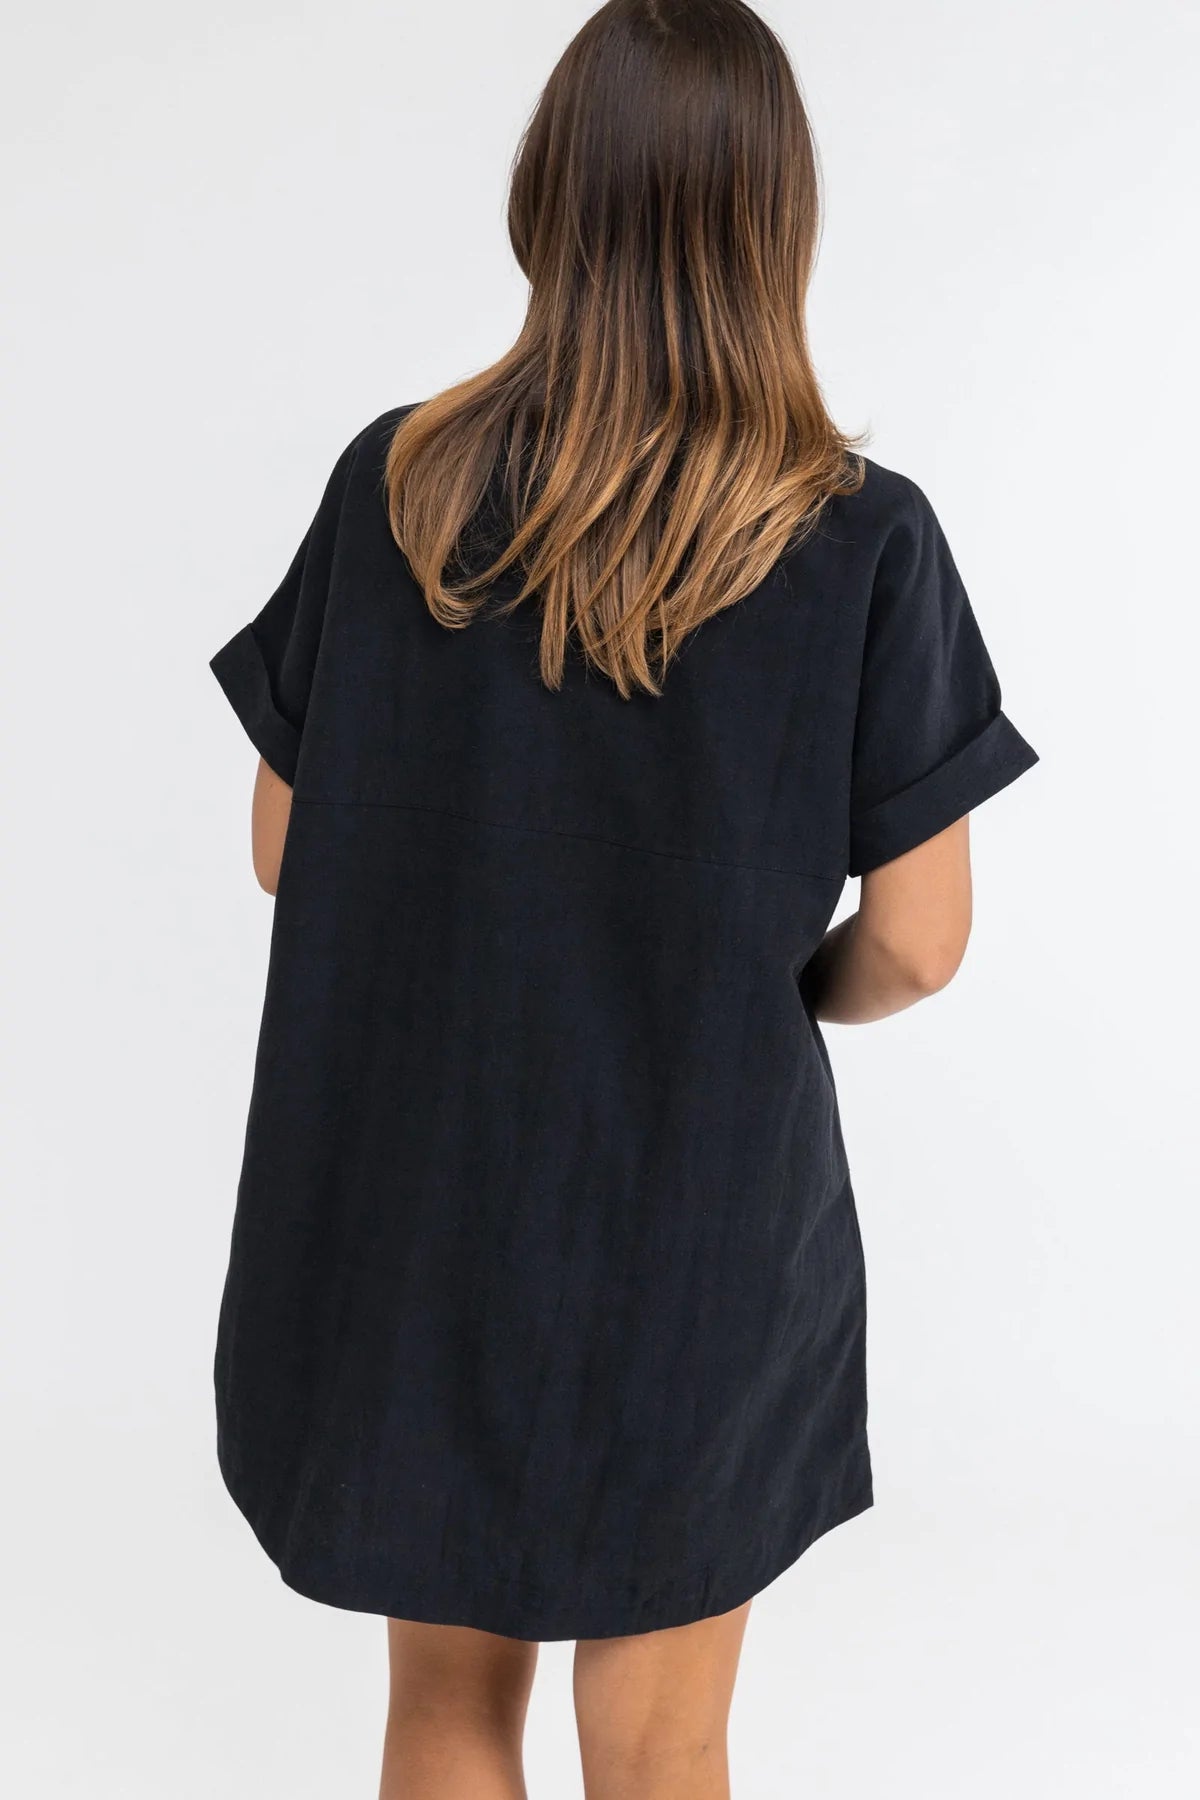 Classic Linen Shirt Dress / Black